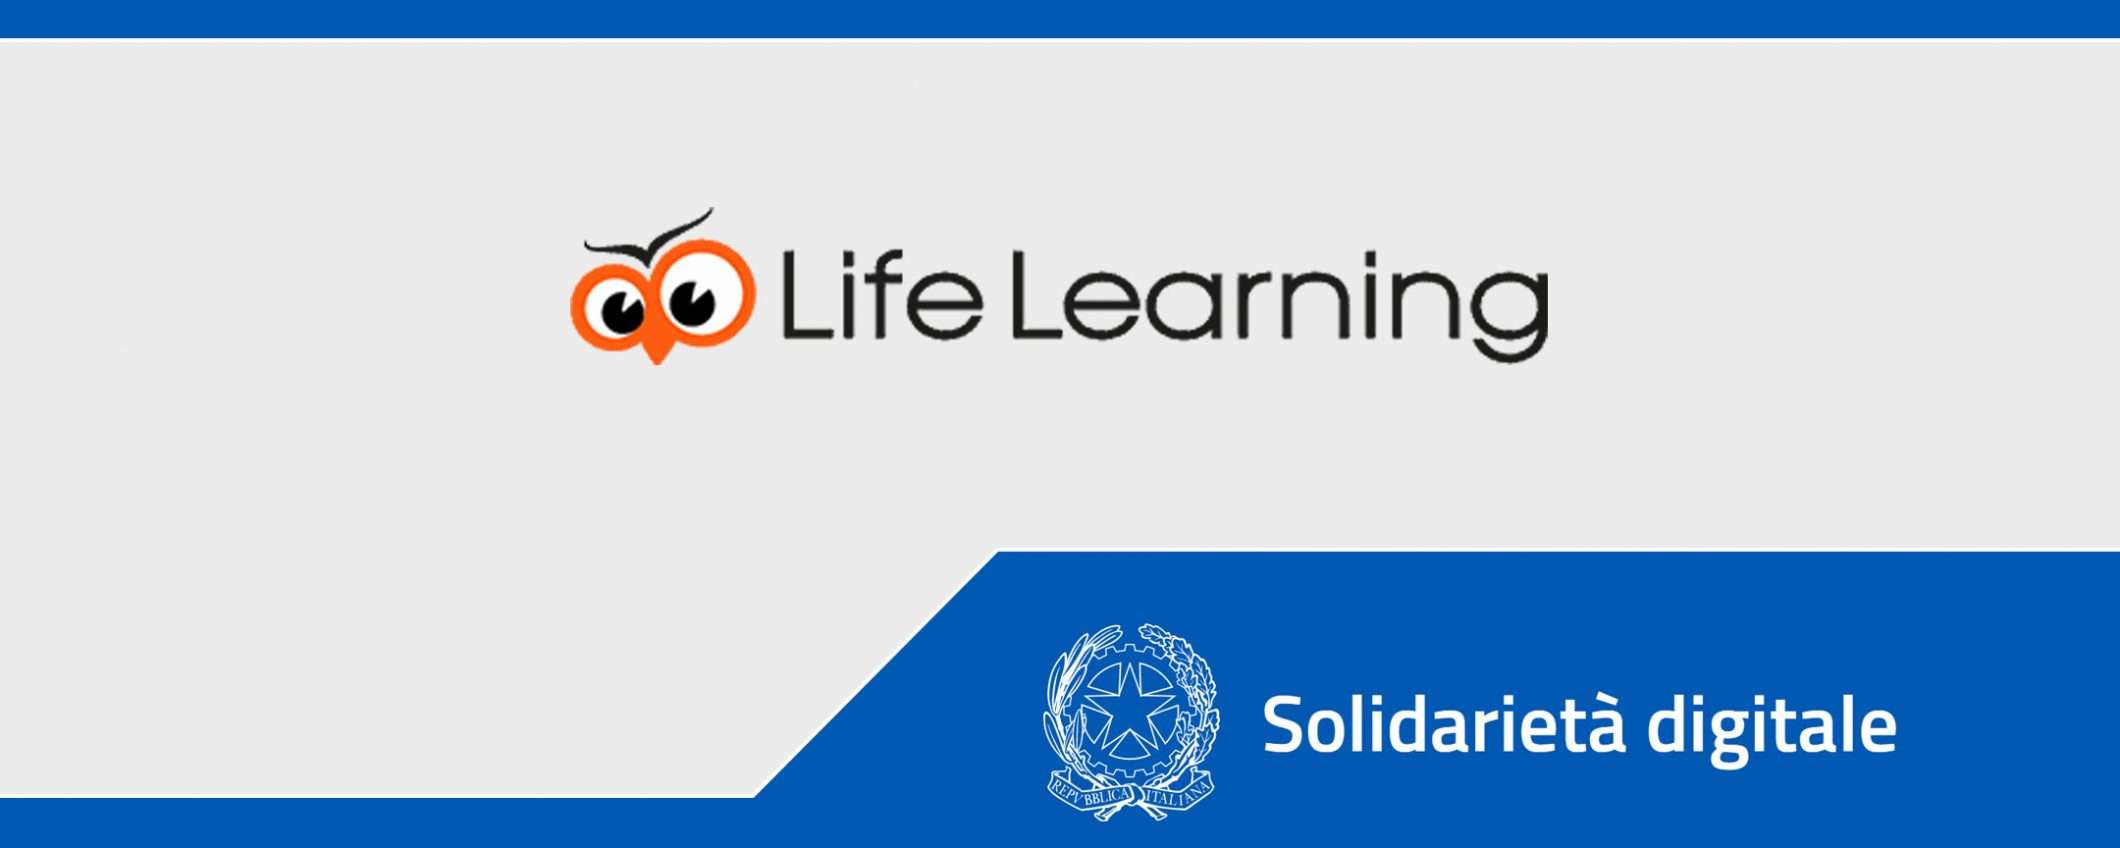 Solidarietà Digitale: i corsi di Life Learning